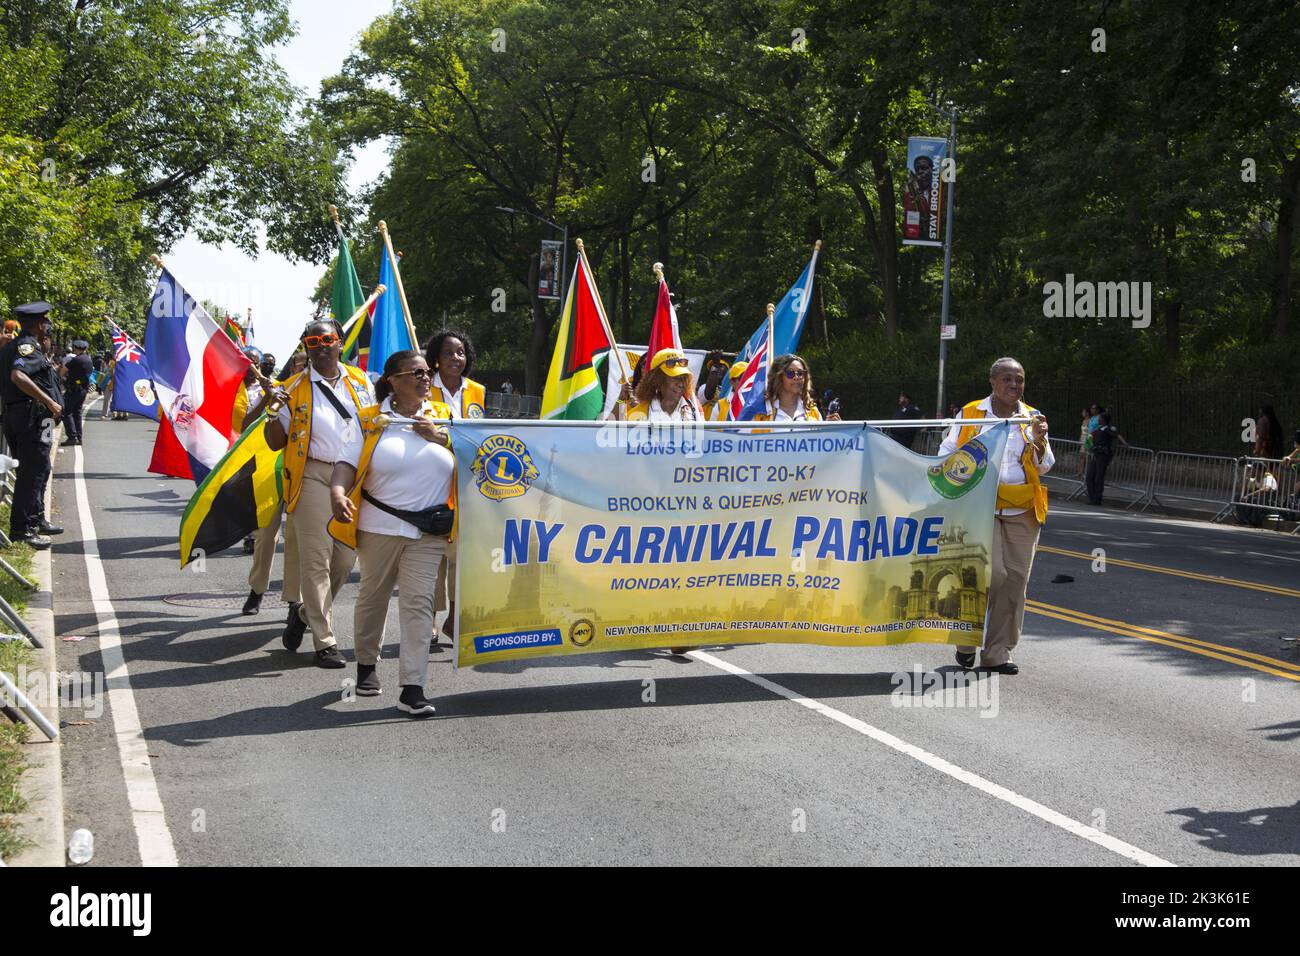 Le West Indian Day Parade Carnival est une célébration annuelle de la culture indienne de l'Ouest, qui se tient chaque année vers le premier lundi de septembre à Crown Heights, Brooklyn, New York. Les marches du Lions Club International affichent des drapeaux des différentes îles des Caraïbes. Banque D'Images